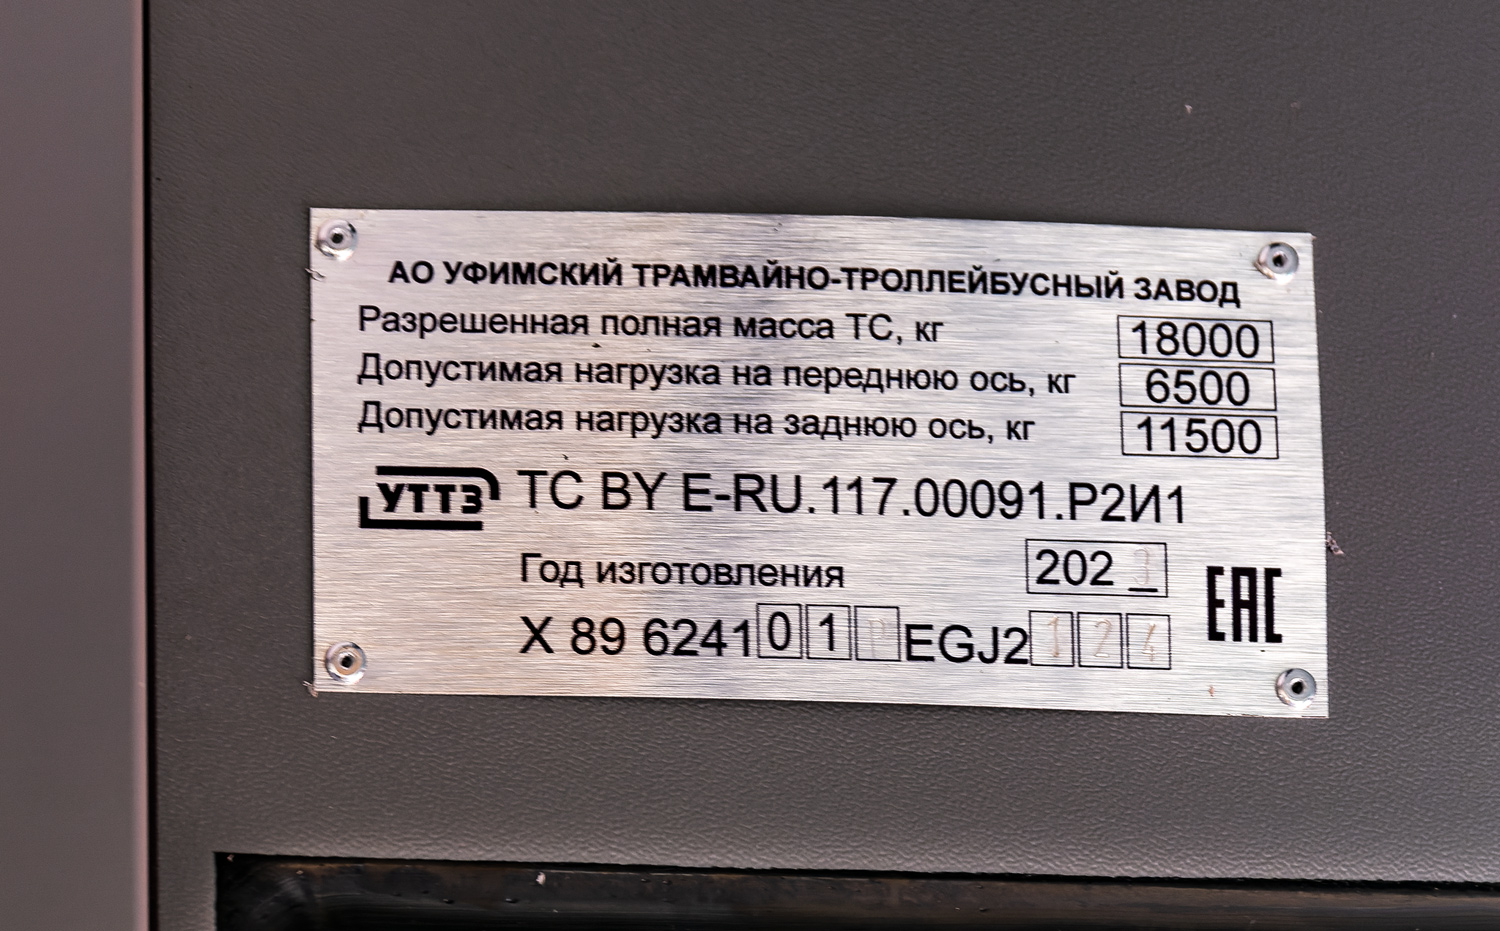 Ufa, UTTZ-6241.01 “Gorozhanin” nr. 1069; Ufa — Nameplates